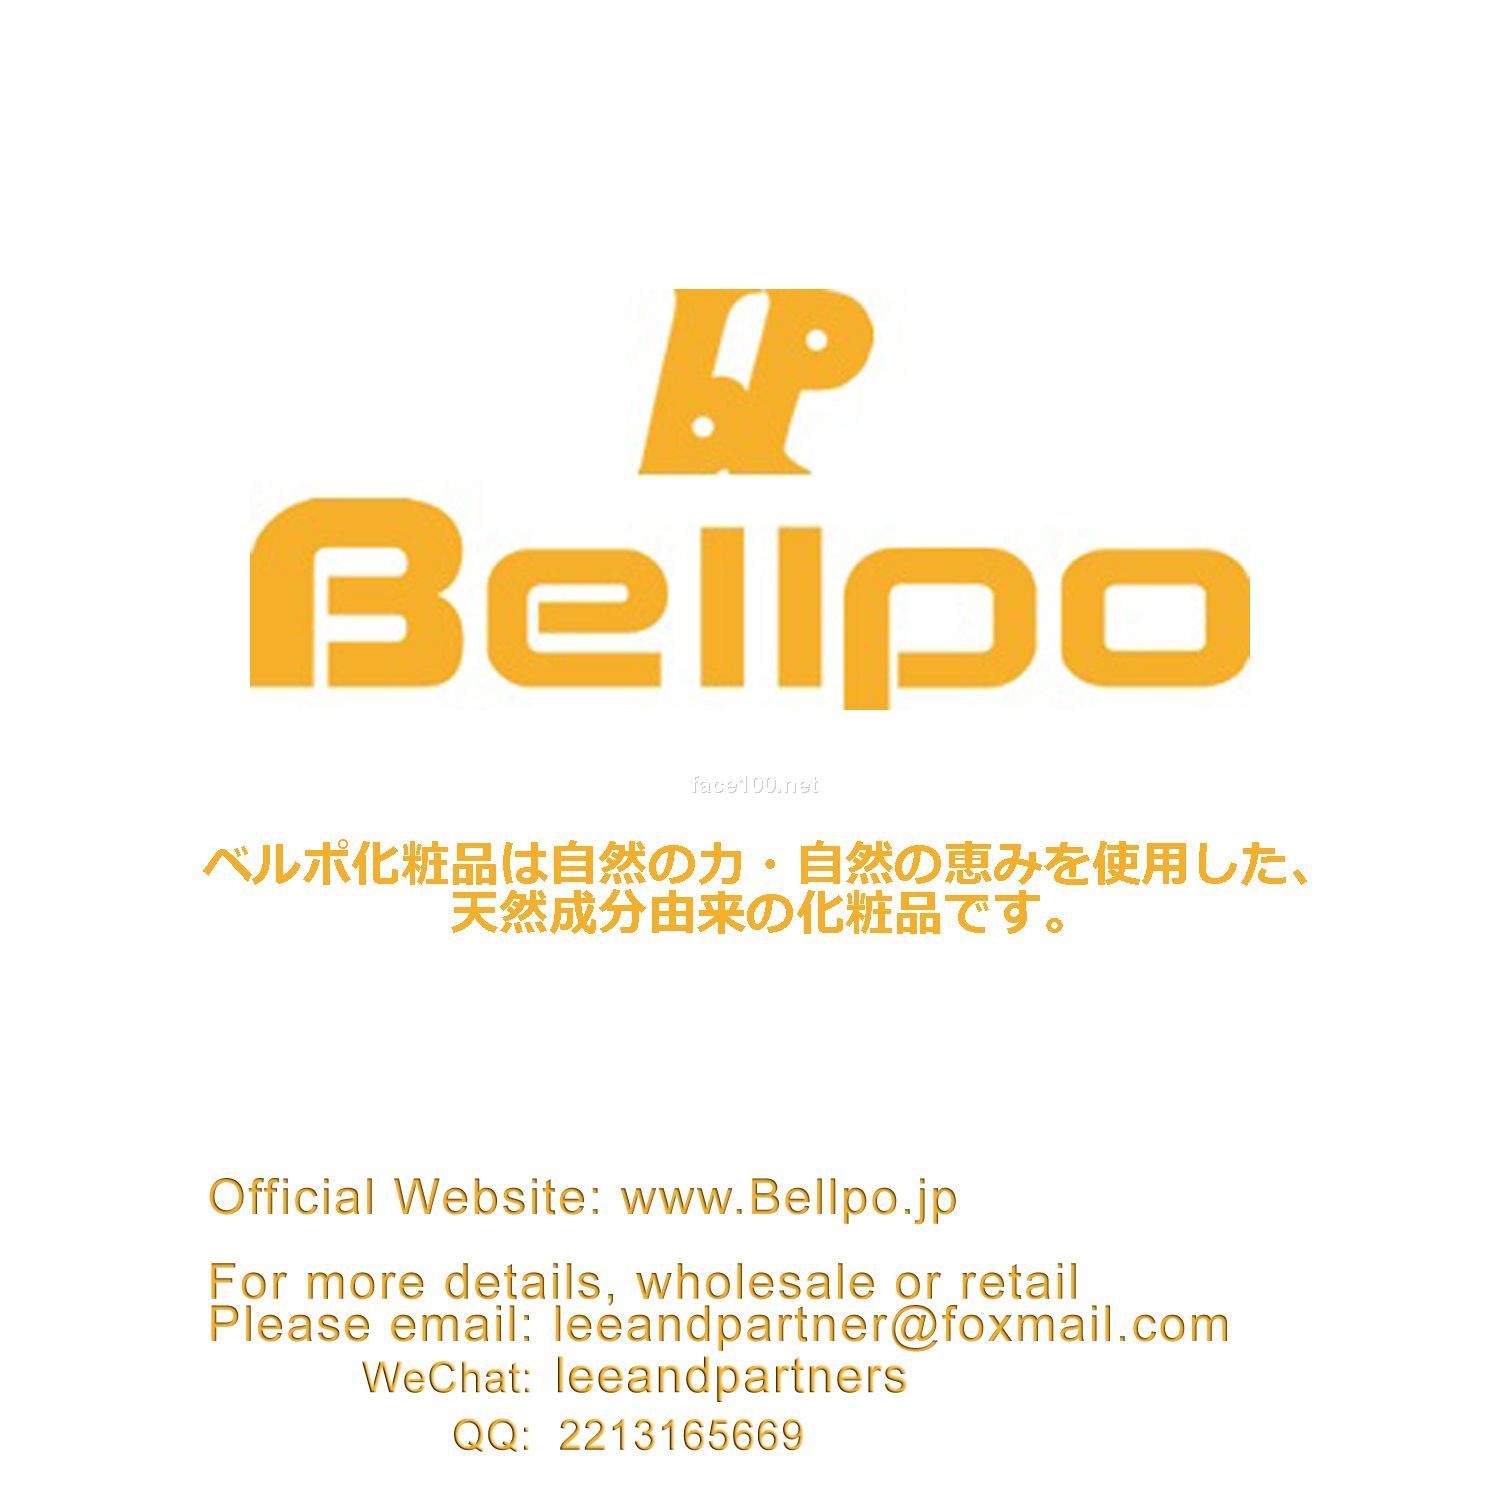 日本 Bellpo 无添加天然成分美容护肤品